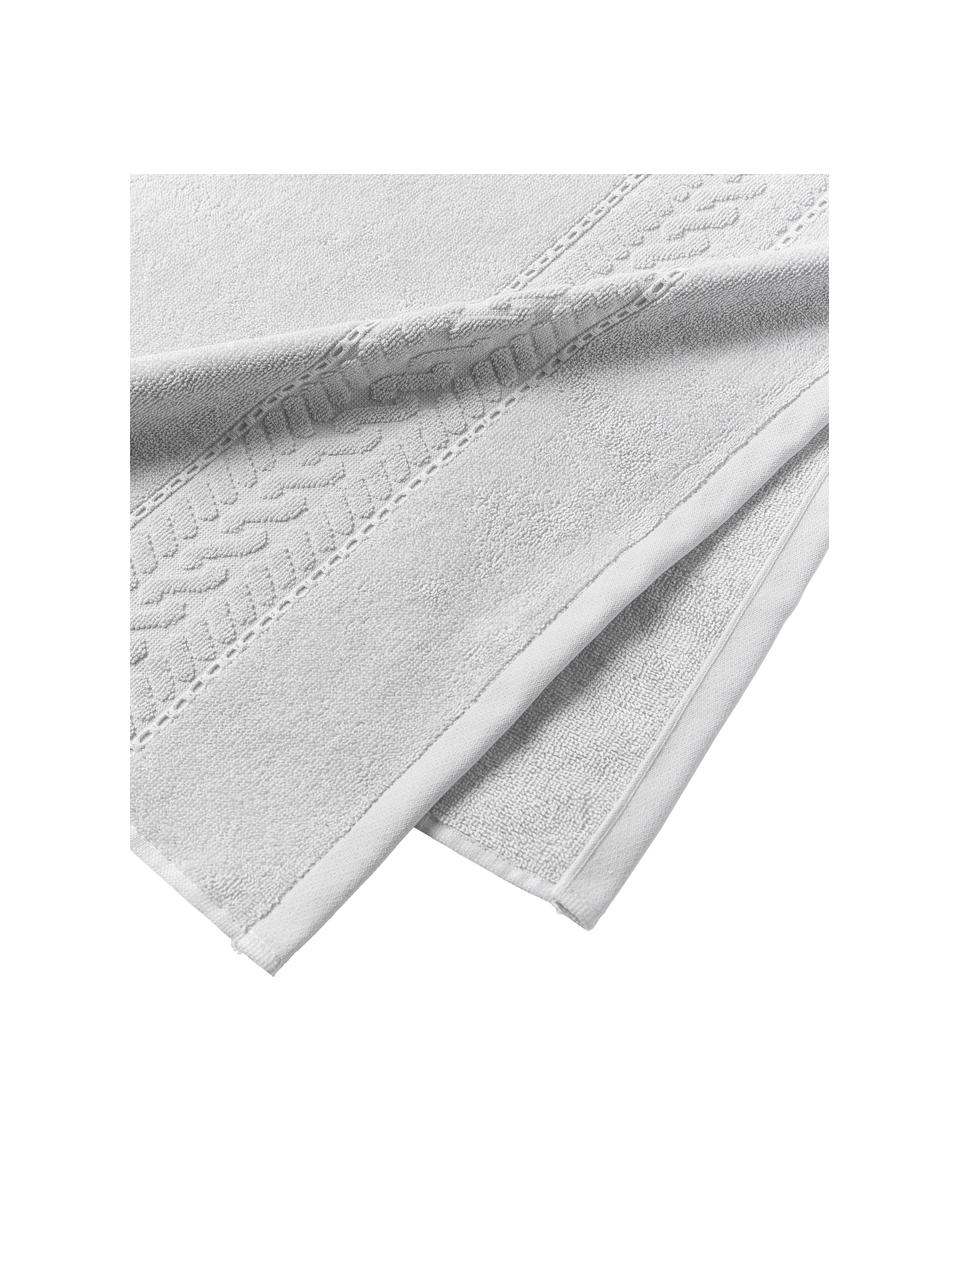 Toalla Cordelia, tamaños diferentes, 100% algodón, Gris claro, Toalla lavabo, An 50 x L 100 cm, 2 uds.